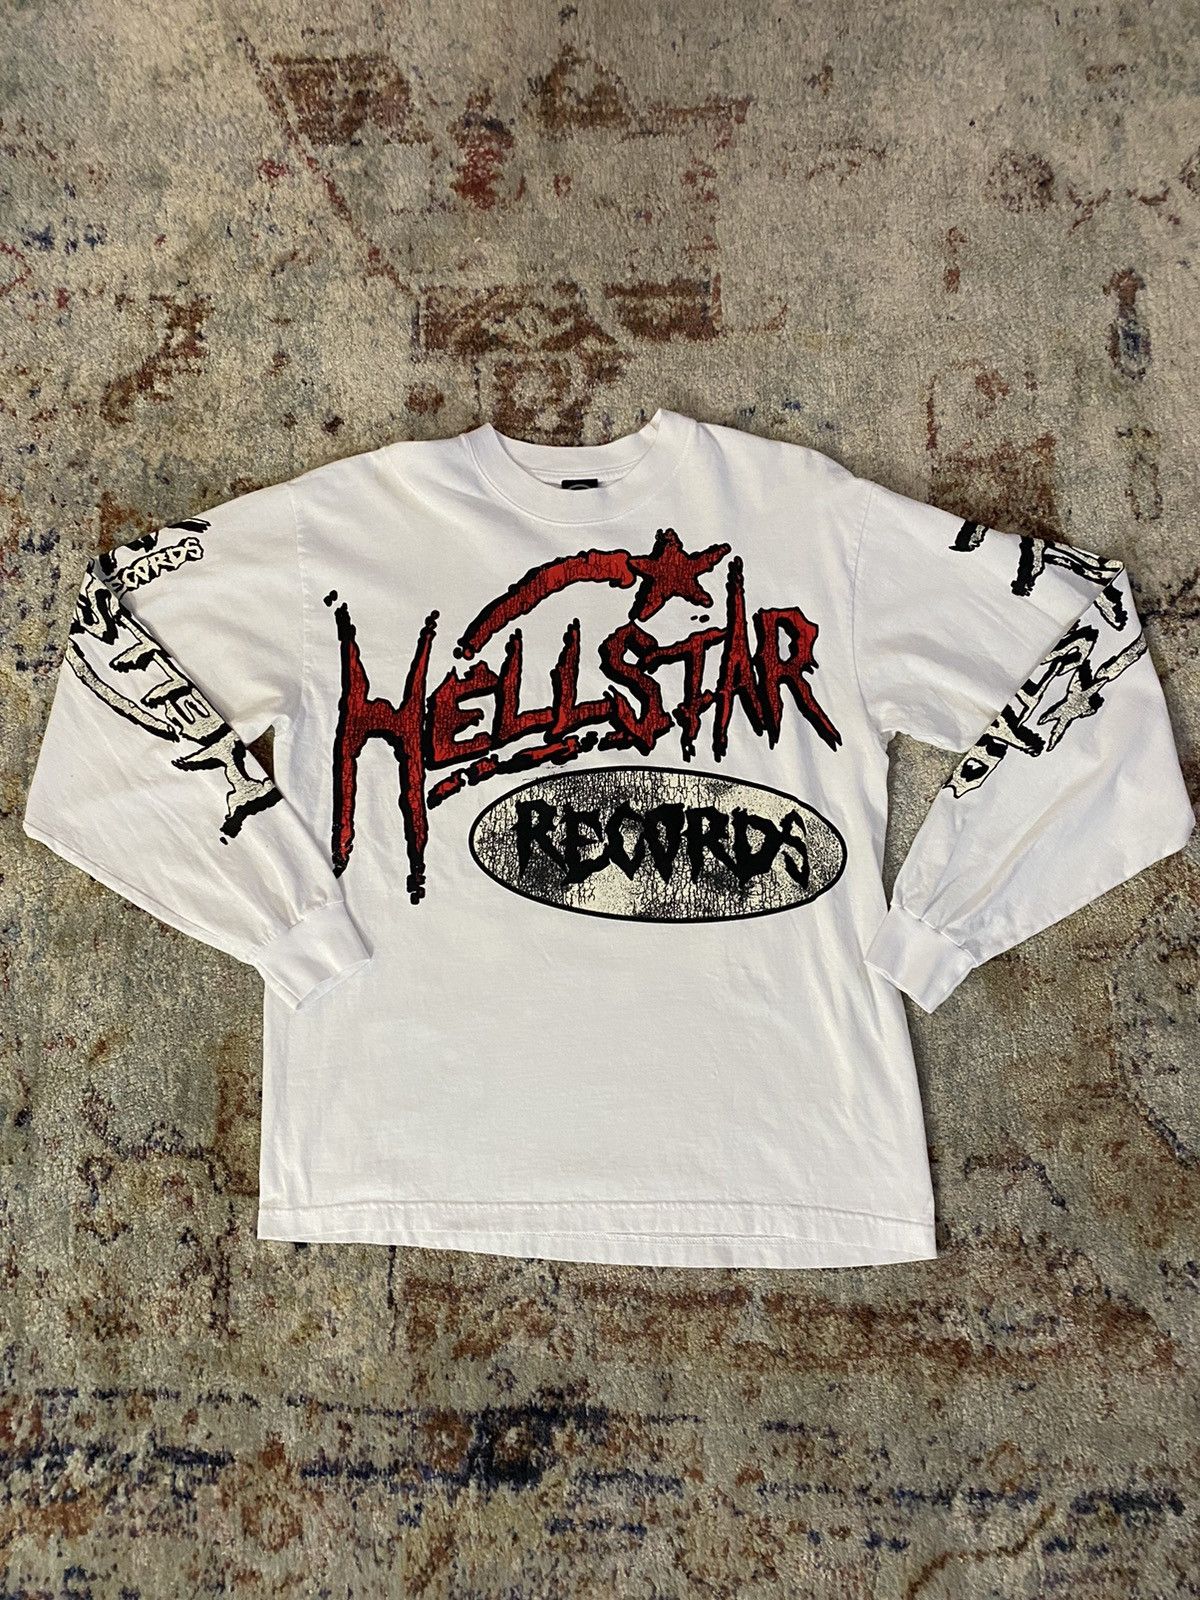 HELLSTAR Hellstar Records Longsleeve | Grailed